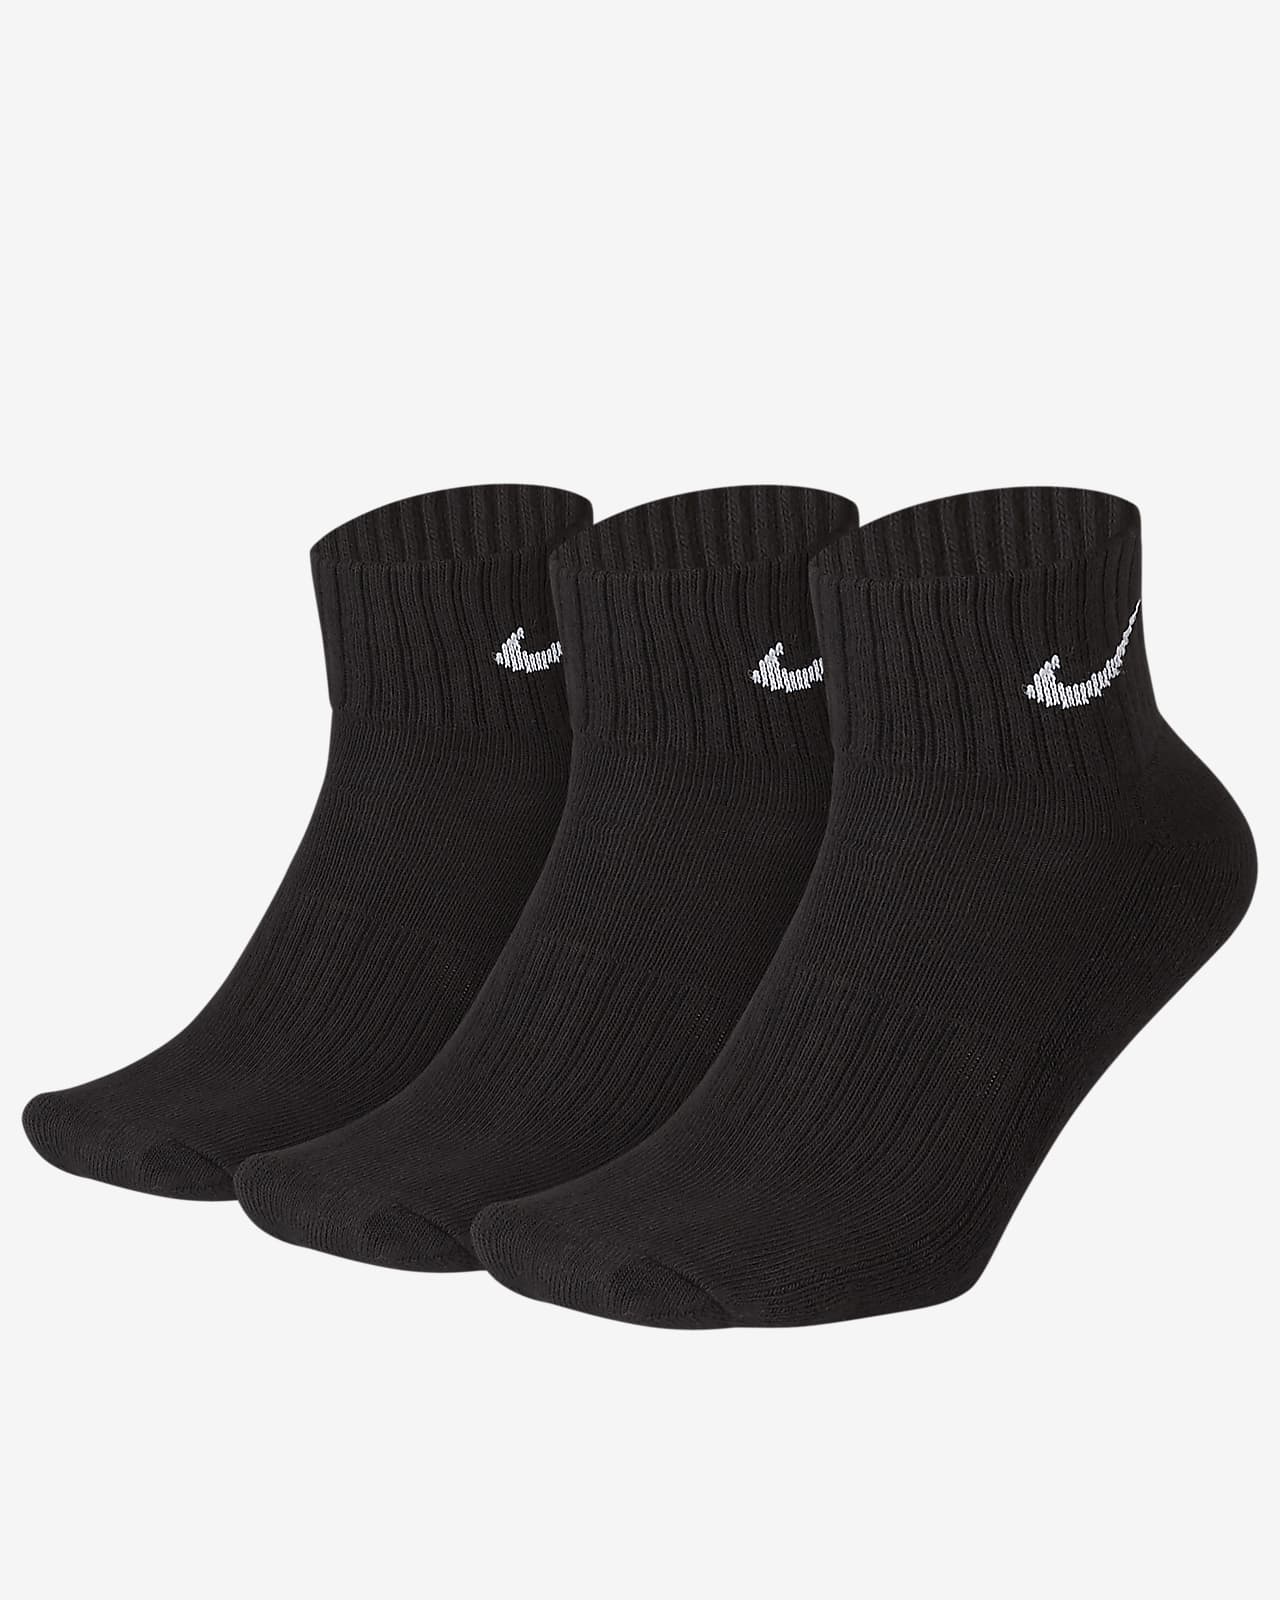 Κάλτσες μέχρι τον αστράγαλο με αντικραδασμική προστασία Nike (τρία ζευγάρια)